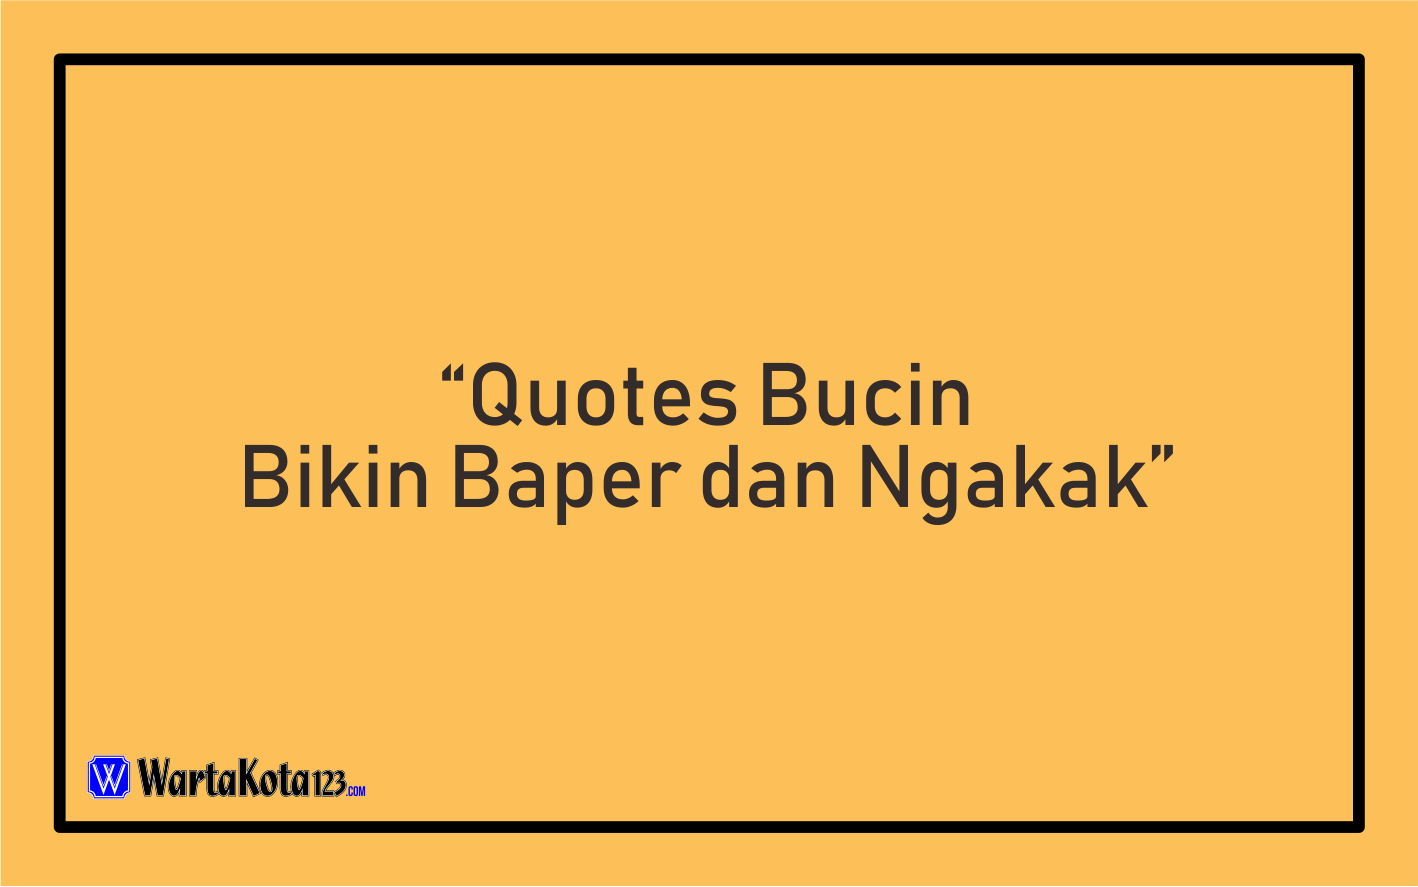 Quotes Bucin